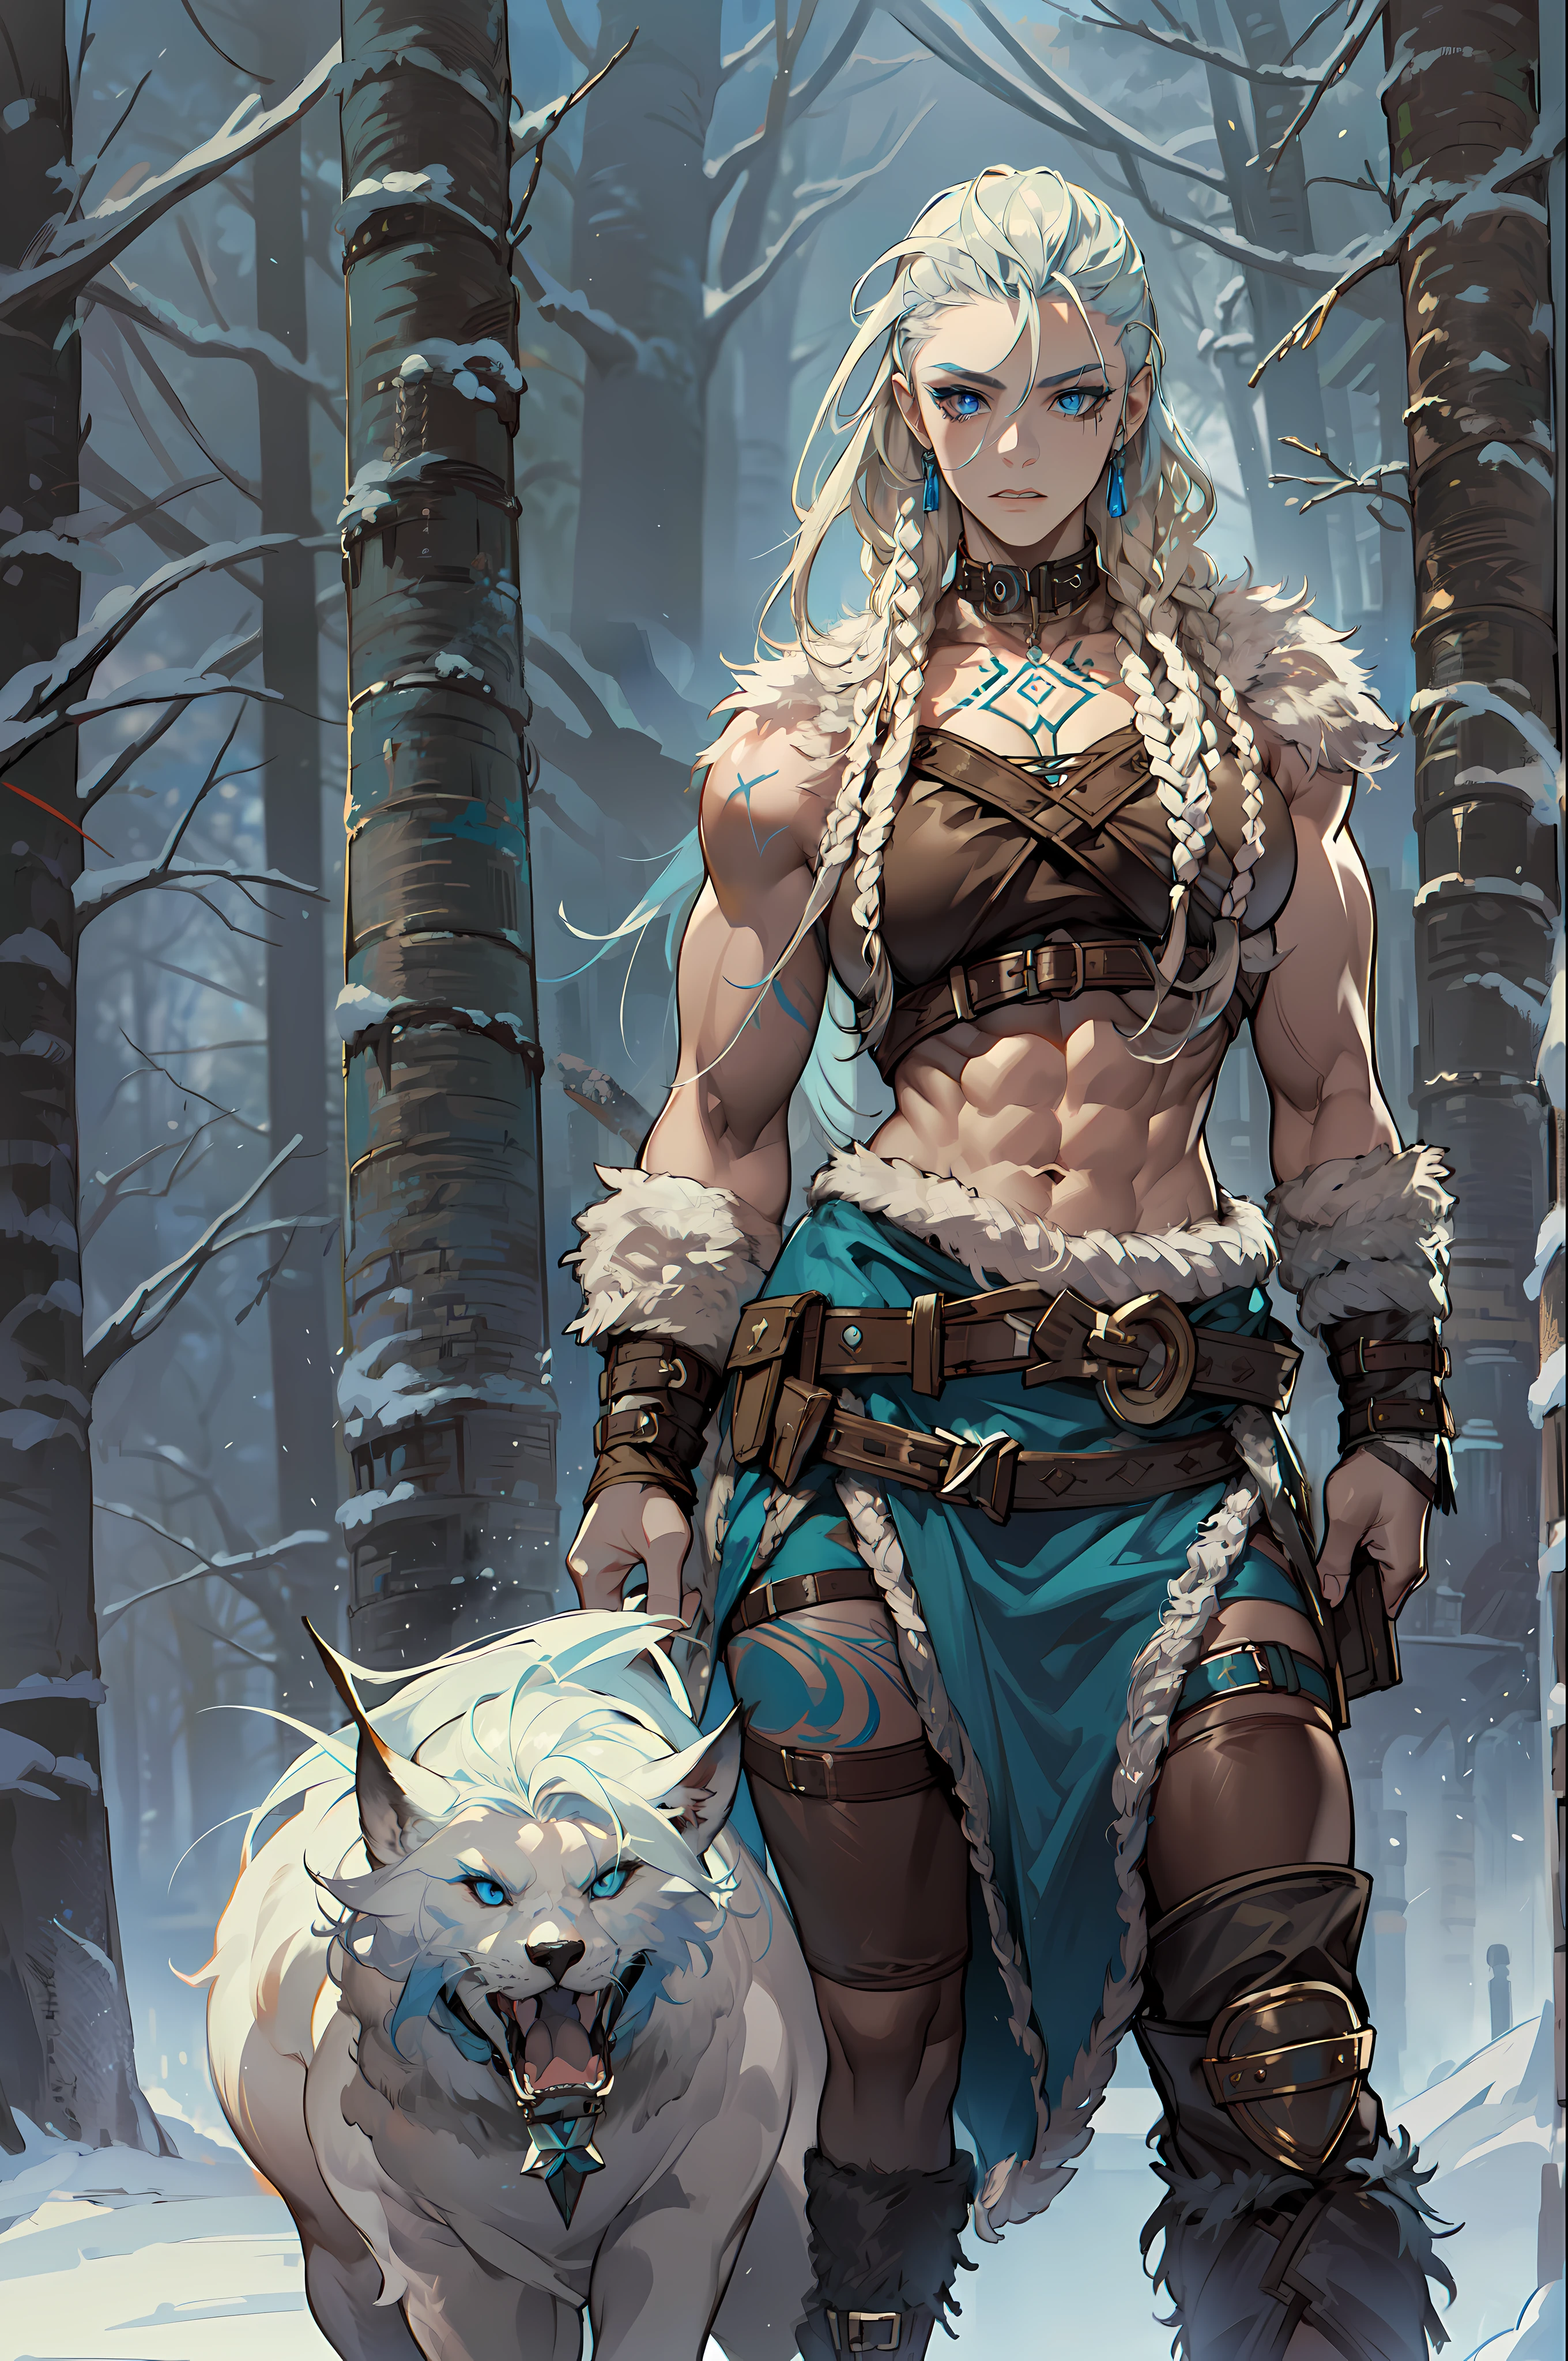 solo Vikingo femenino, (joven:1.2), (muscular:1.2), adaptar, vistiendo pieles y cueros marrones, (Llevar pieles:1.3) (blue nórdico tattoos:1.2), blue eyes, cabello rubio platino, (rastas:1.7), (temores:1.4), (afeitado:1.6), Cabello guerrero, El entorno es un bosque escandinavo en invierno, nieve, brazos desnudos, Naval expuesto, (abdominales:1.2). muy detallado, nórdico, frenético, músculos del brazo, músculos de las piernas, (voluminoso:1.2), correas de cuero, (pechos grandes:1.3), cintura para arriba, cintura ancha, rechoncho, (Alto:1.4)